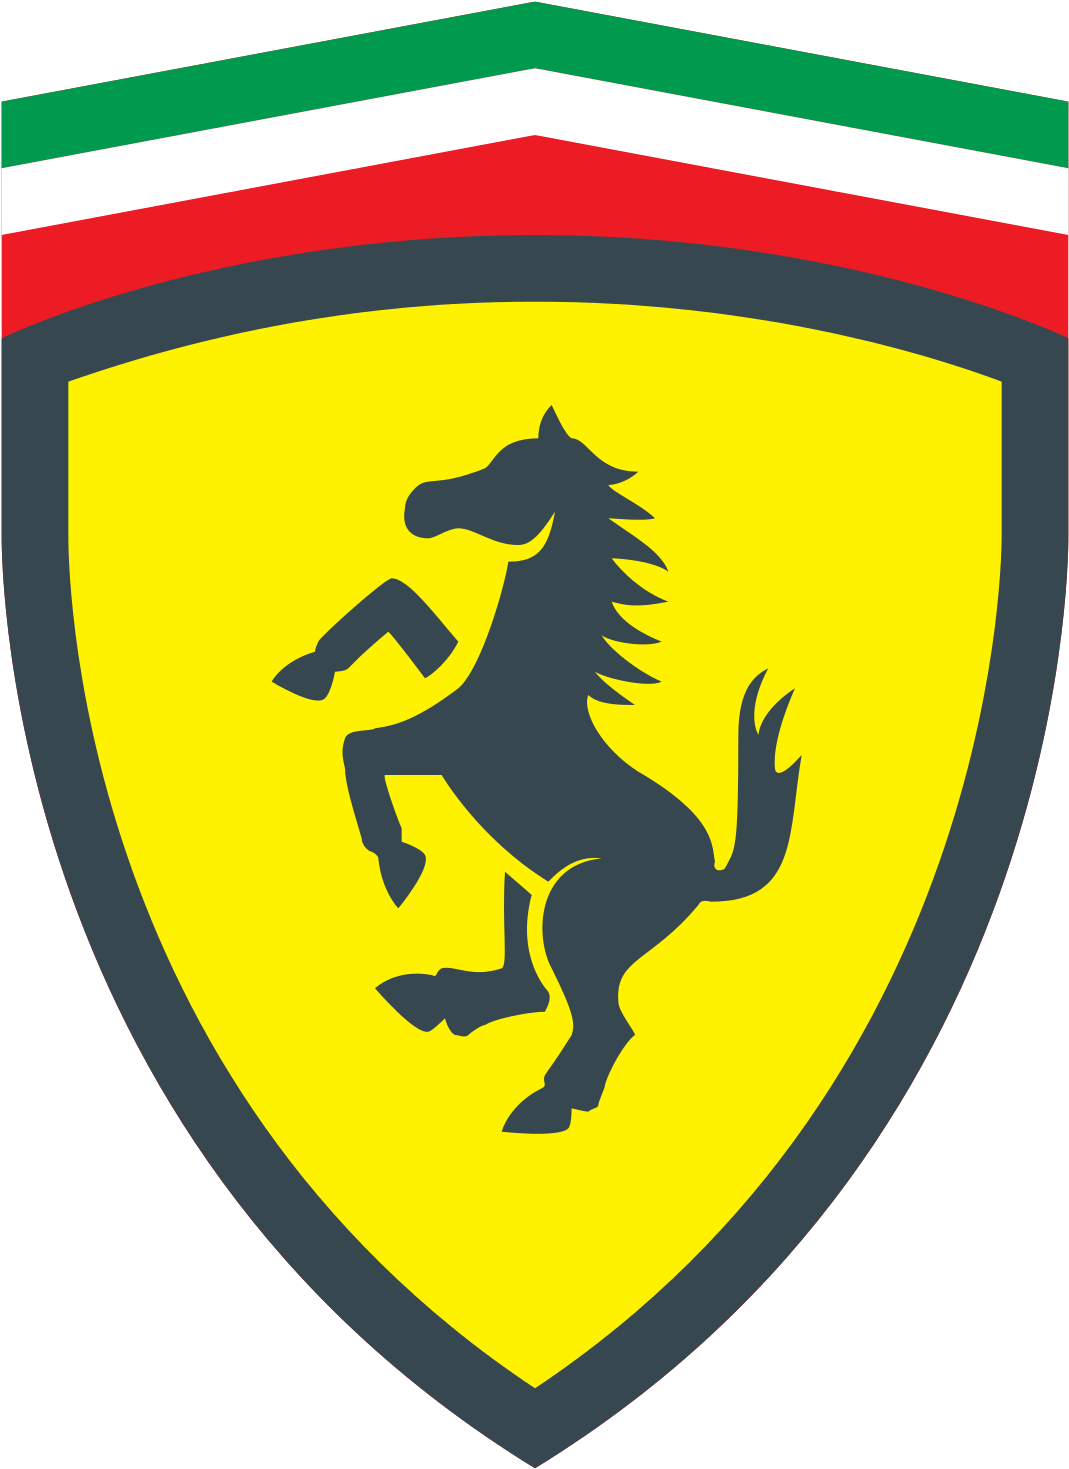 Logotipo da Ferrari